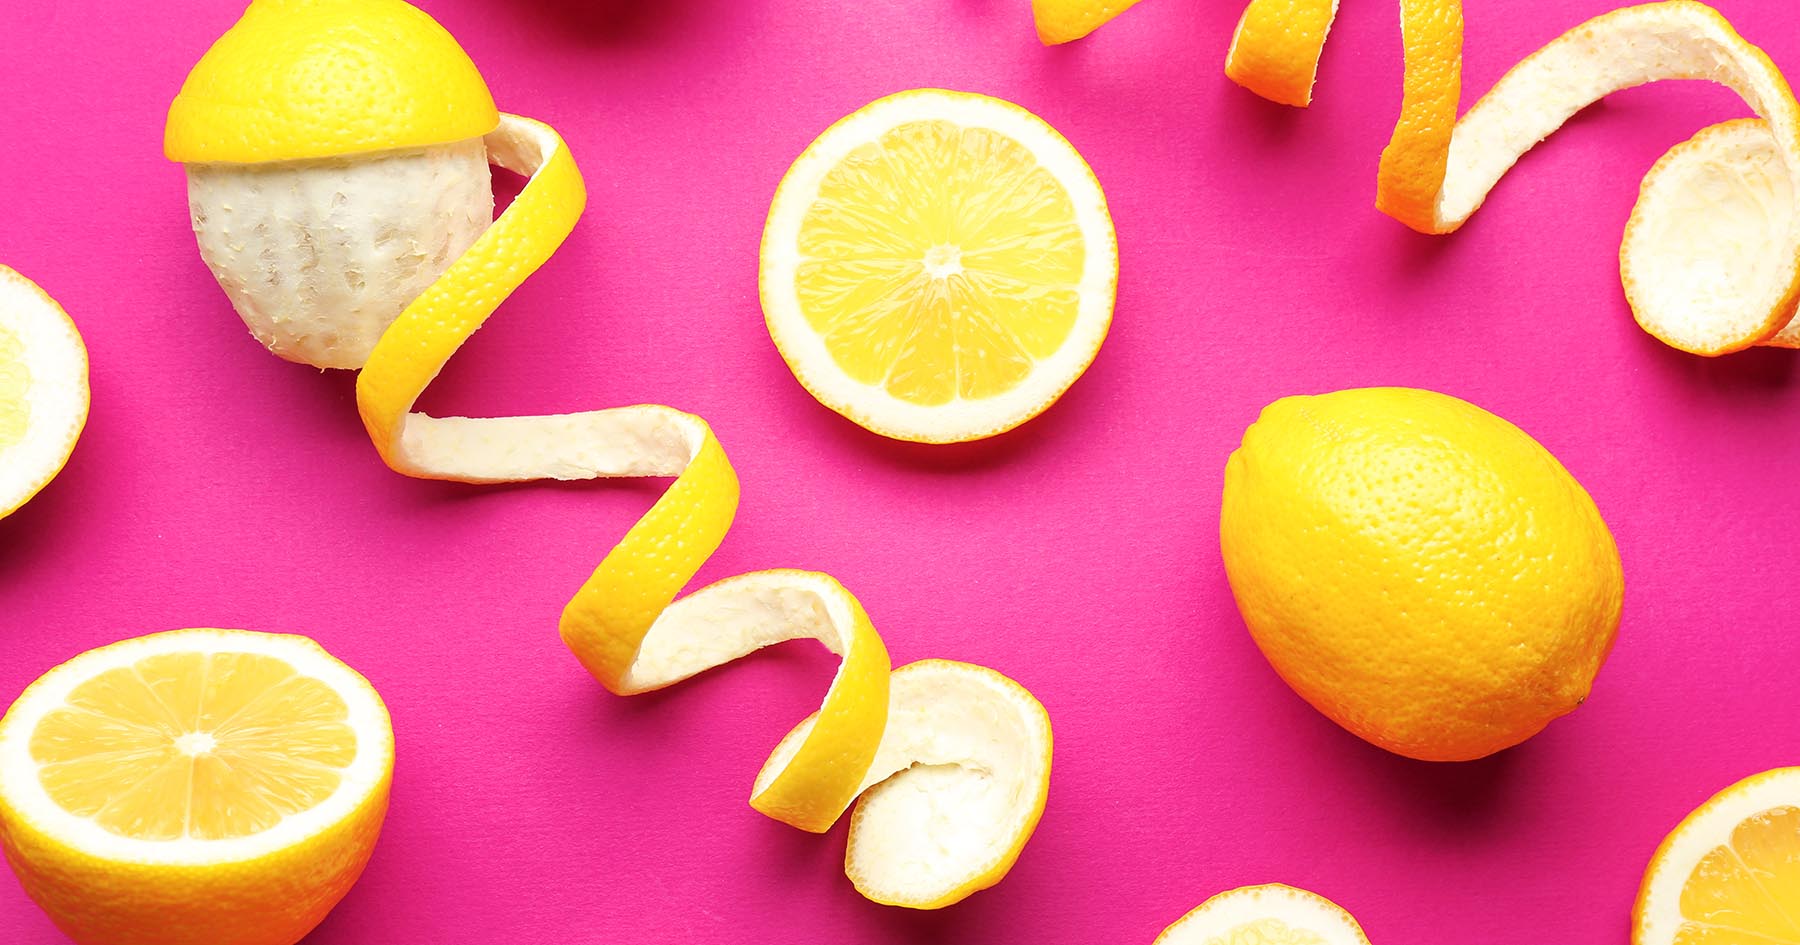 فوائد غير متوقعة.. هل تتخيل ما سيحدث لجسمك عند أكل قشر الليمون